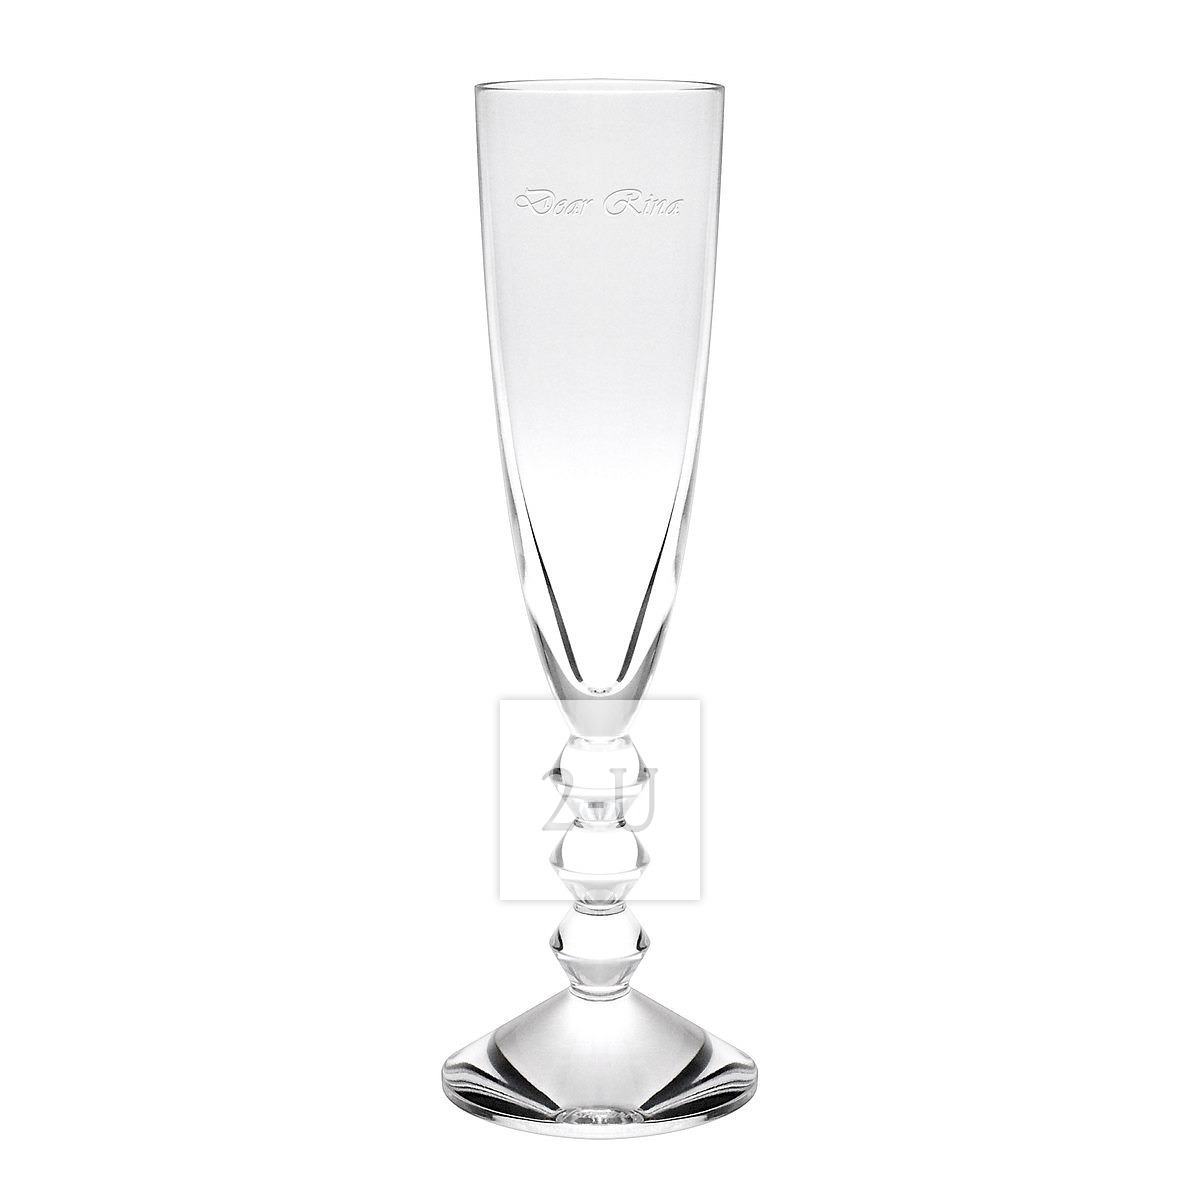 法國巴卡拉 Baccarat Vega 係列水晶玻璃香檳杯